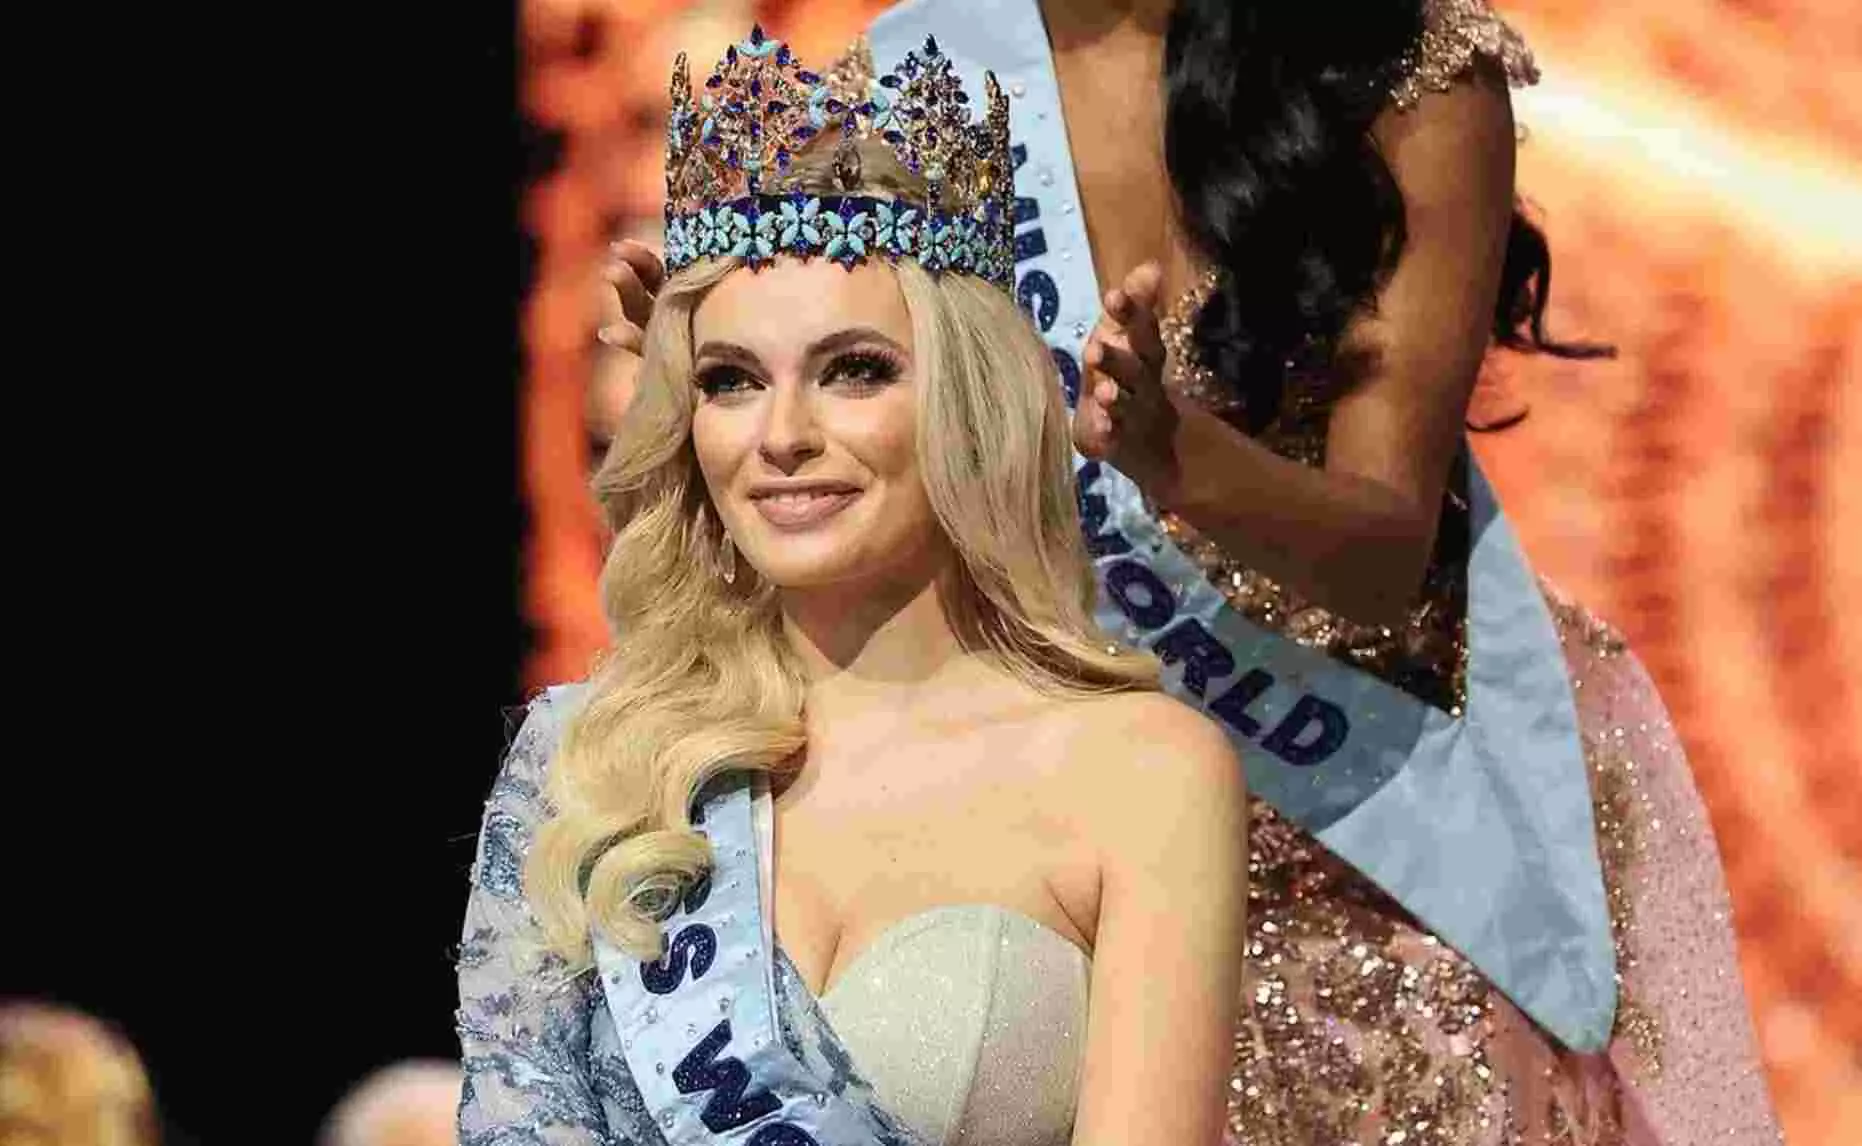 Miss World 2021 : पोलैंड की कैरोलिना बिलाव्स्का ने जीता पेजेंट, भारतीय मूल की अमेरिकन सुंदरी श्री सैनी रहीं फर्स्ट रनर अप